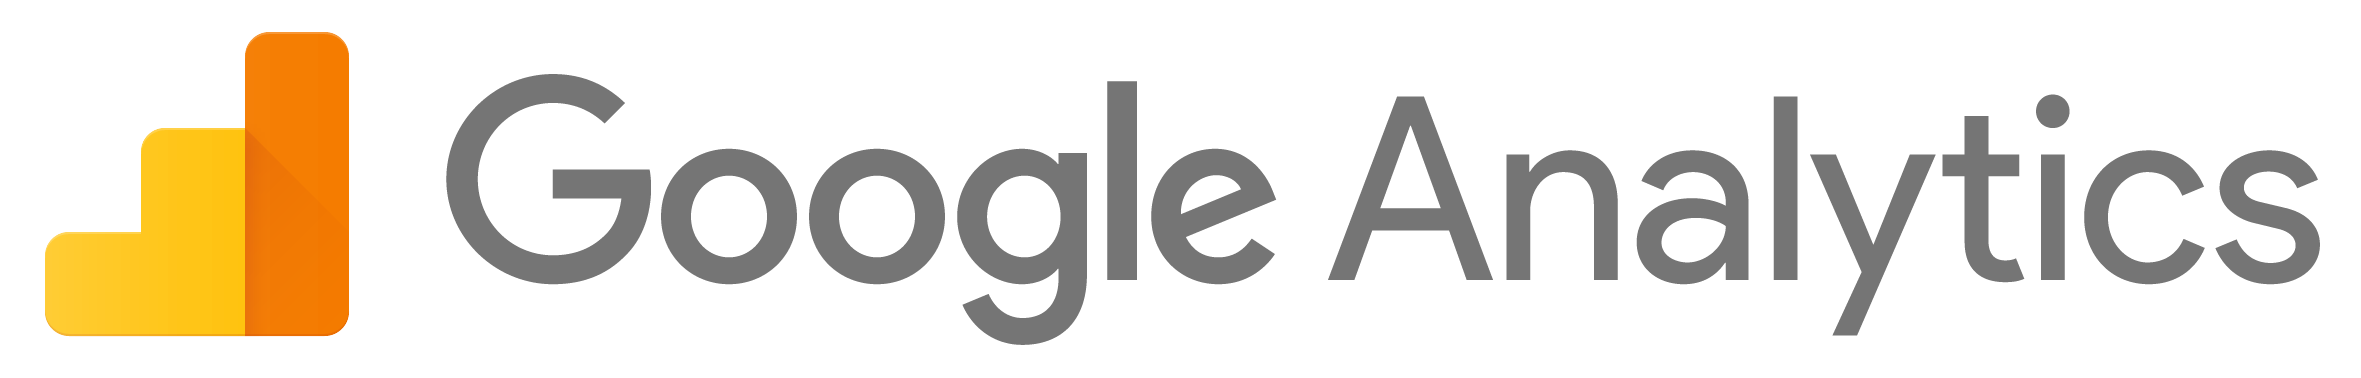 Logo Govoni Marketing Digital